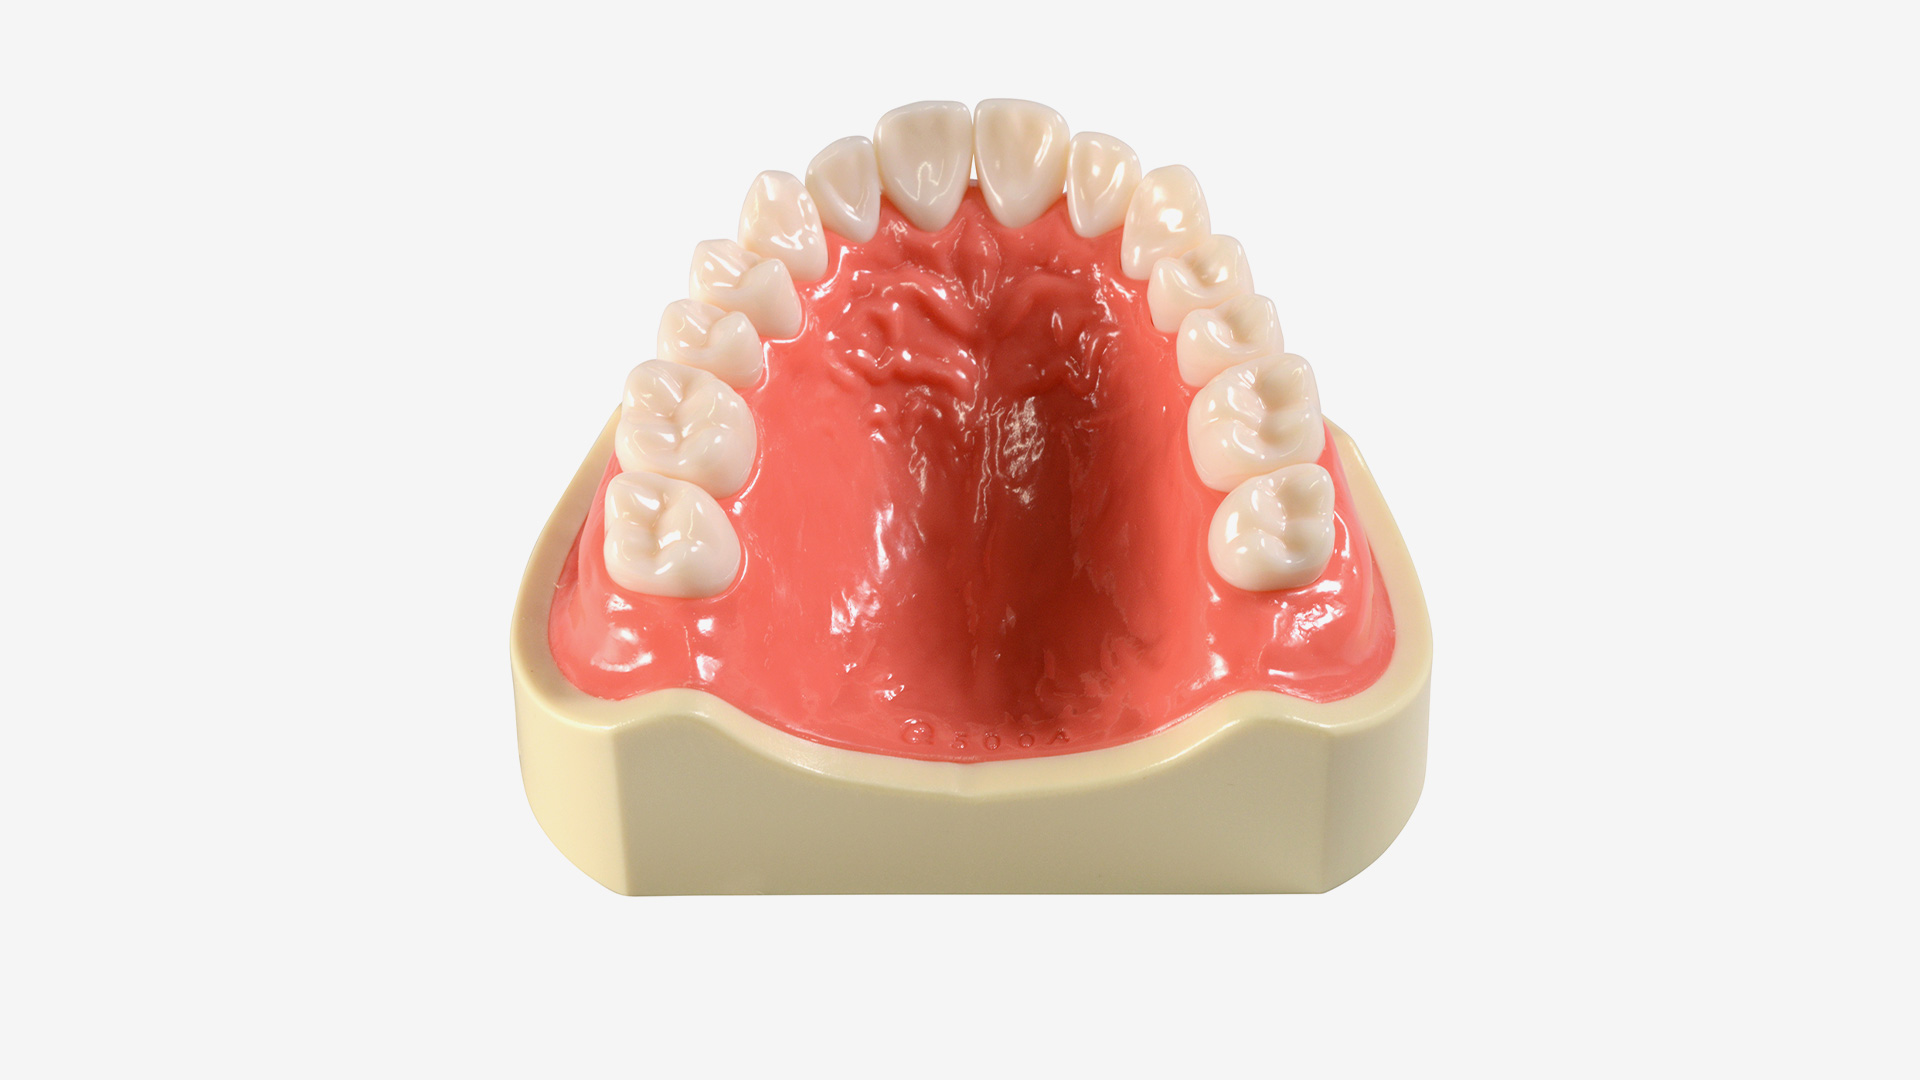 Basismodell E50H-500 AU, OK mit hartem pinkfarbenen Zahnfleisch, mit verschraubten Zähnen